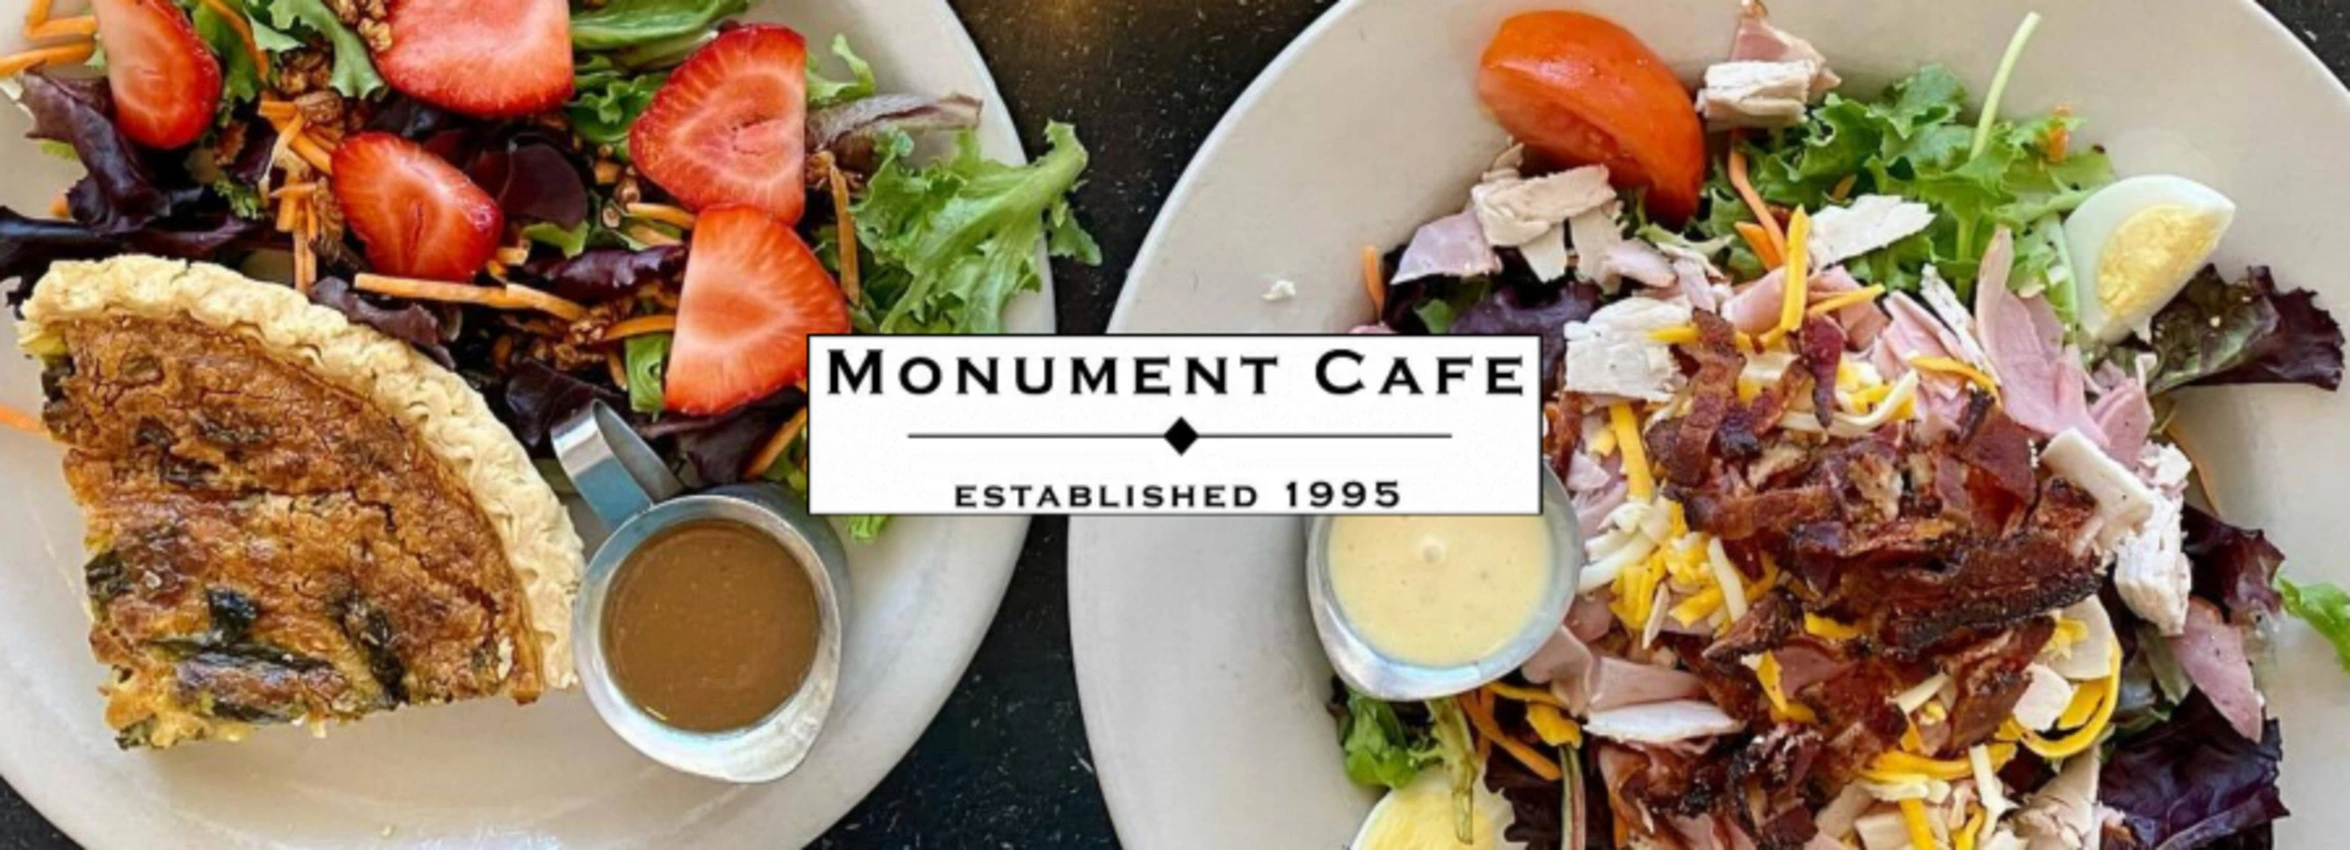 Monument-Cafe_Desktop_ET